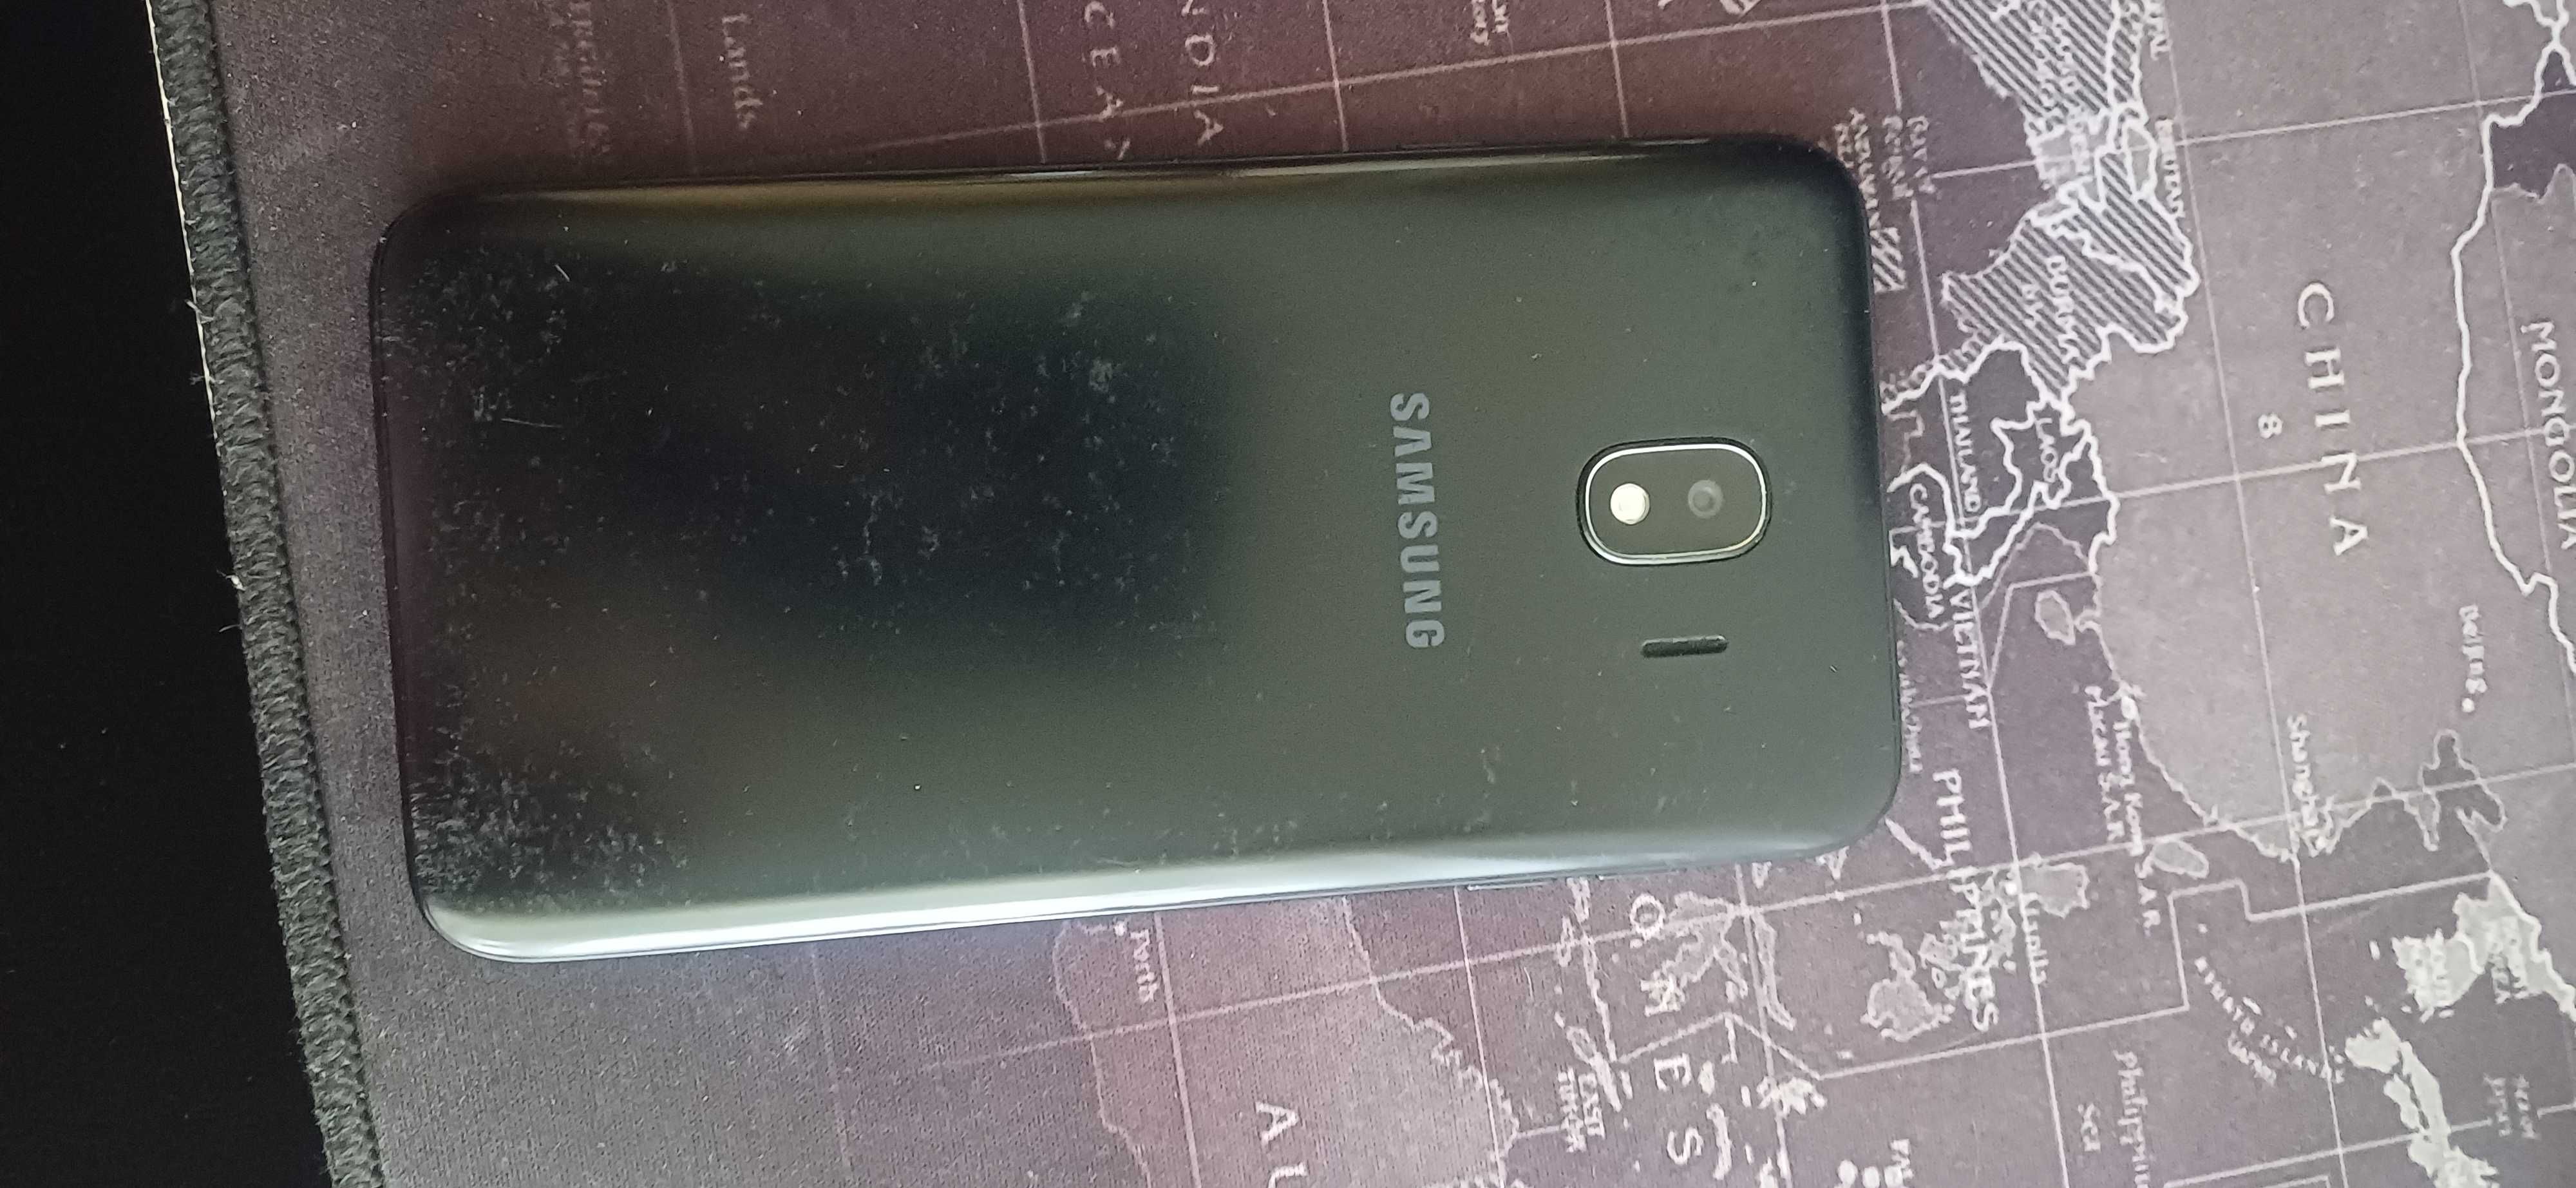 Продам Samsung j4